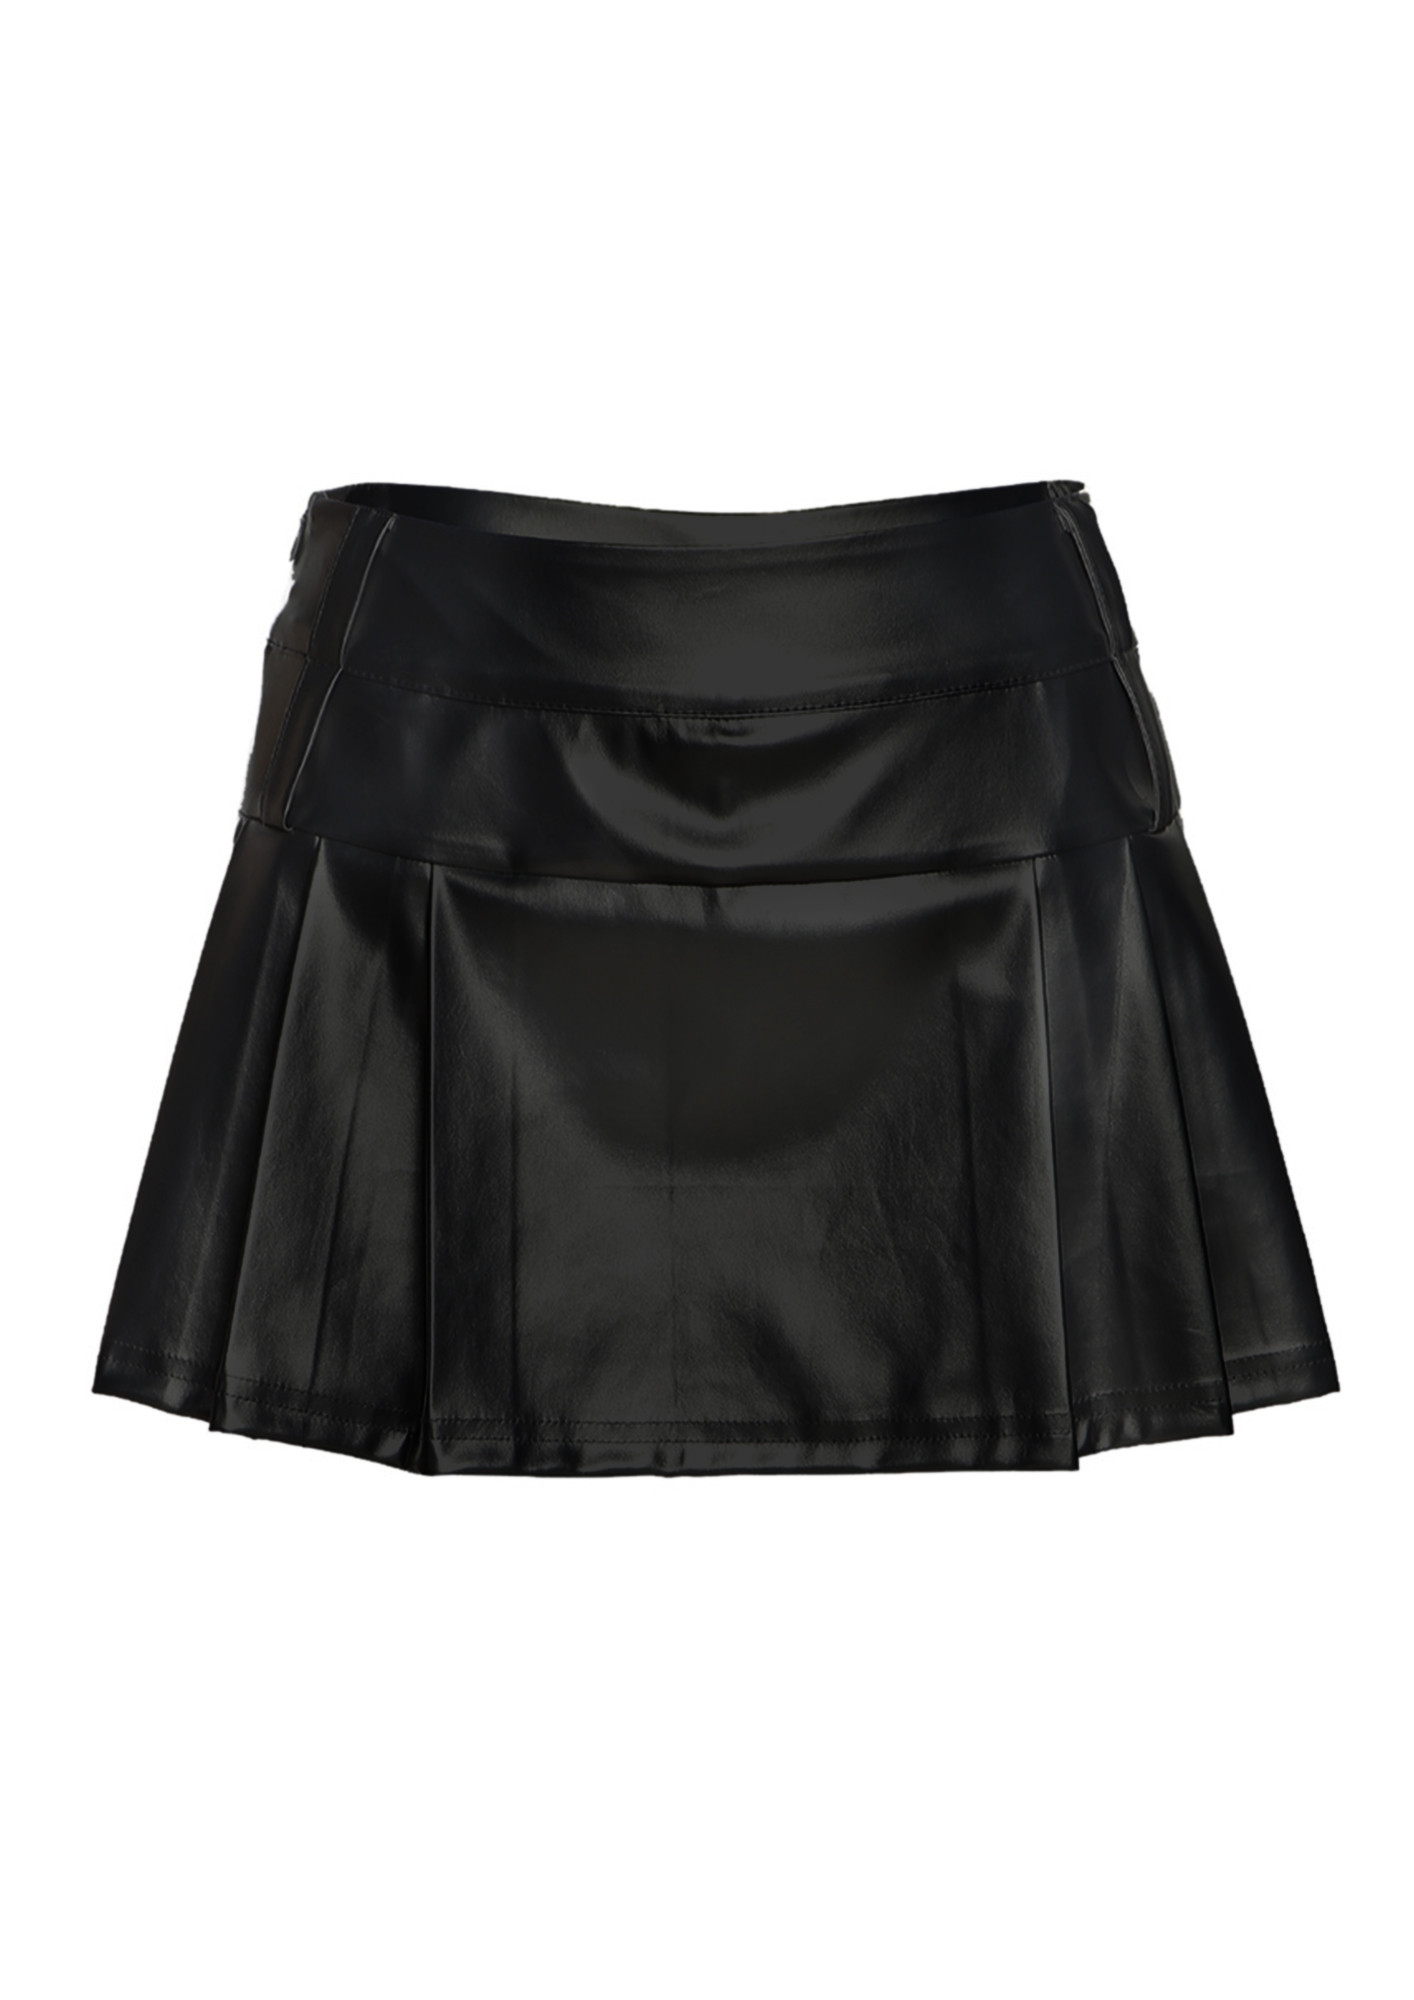 Black leather skater skirt, Women's Fashion, Bottoms, Skirts on Carousell